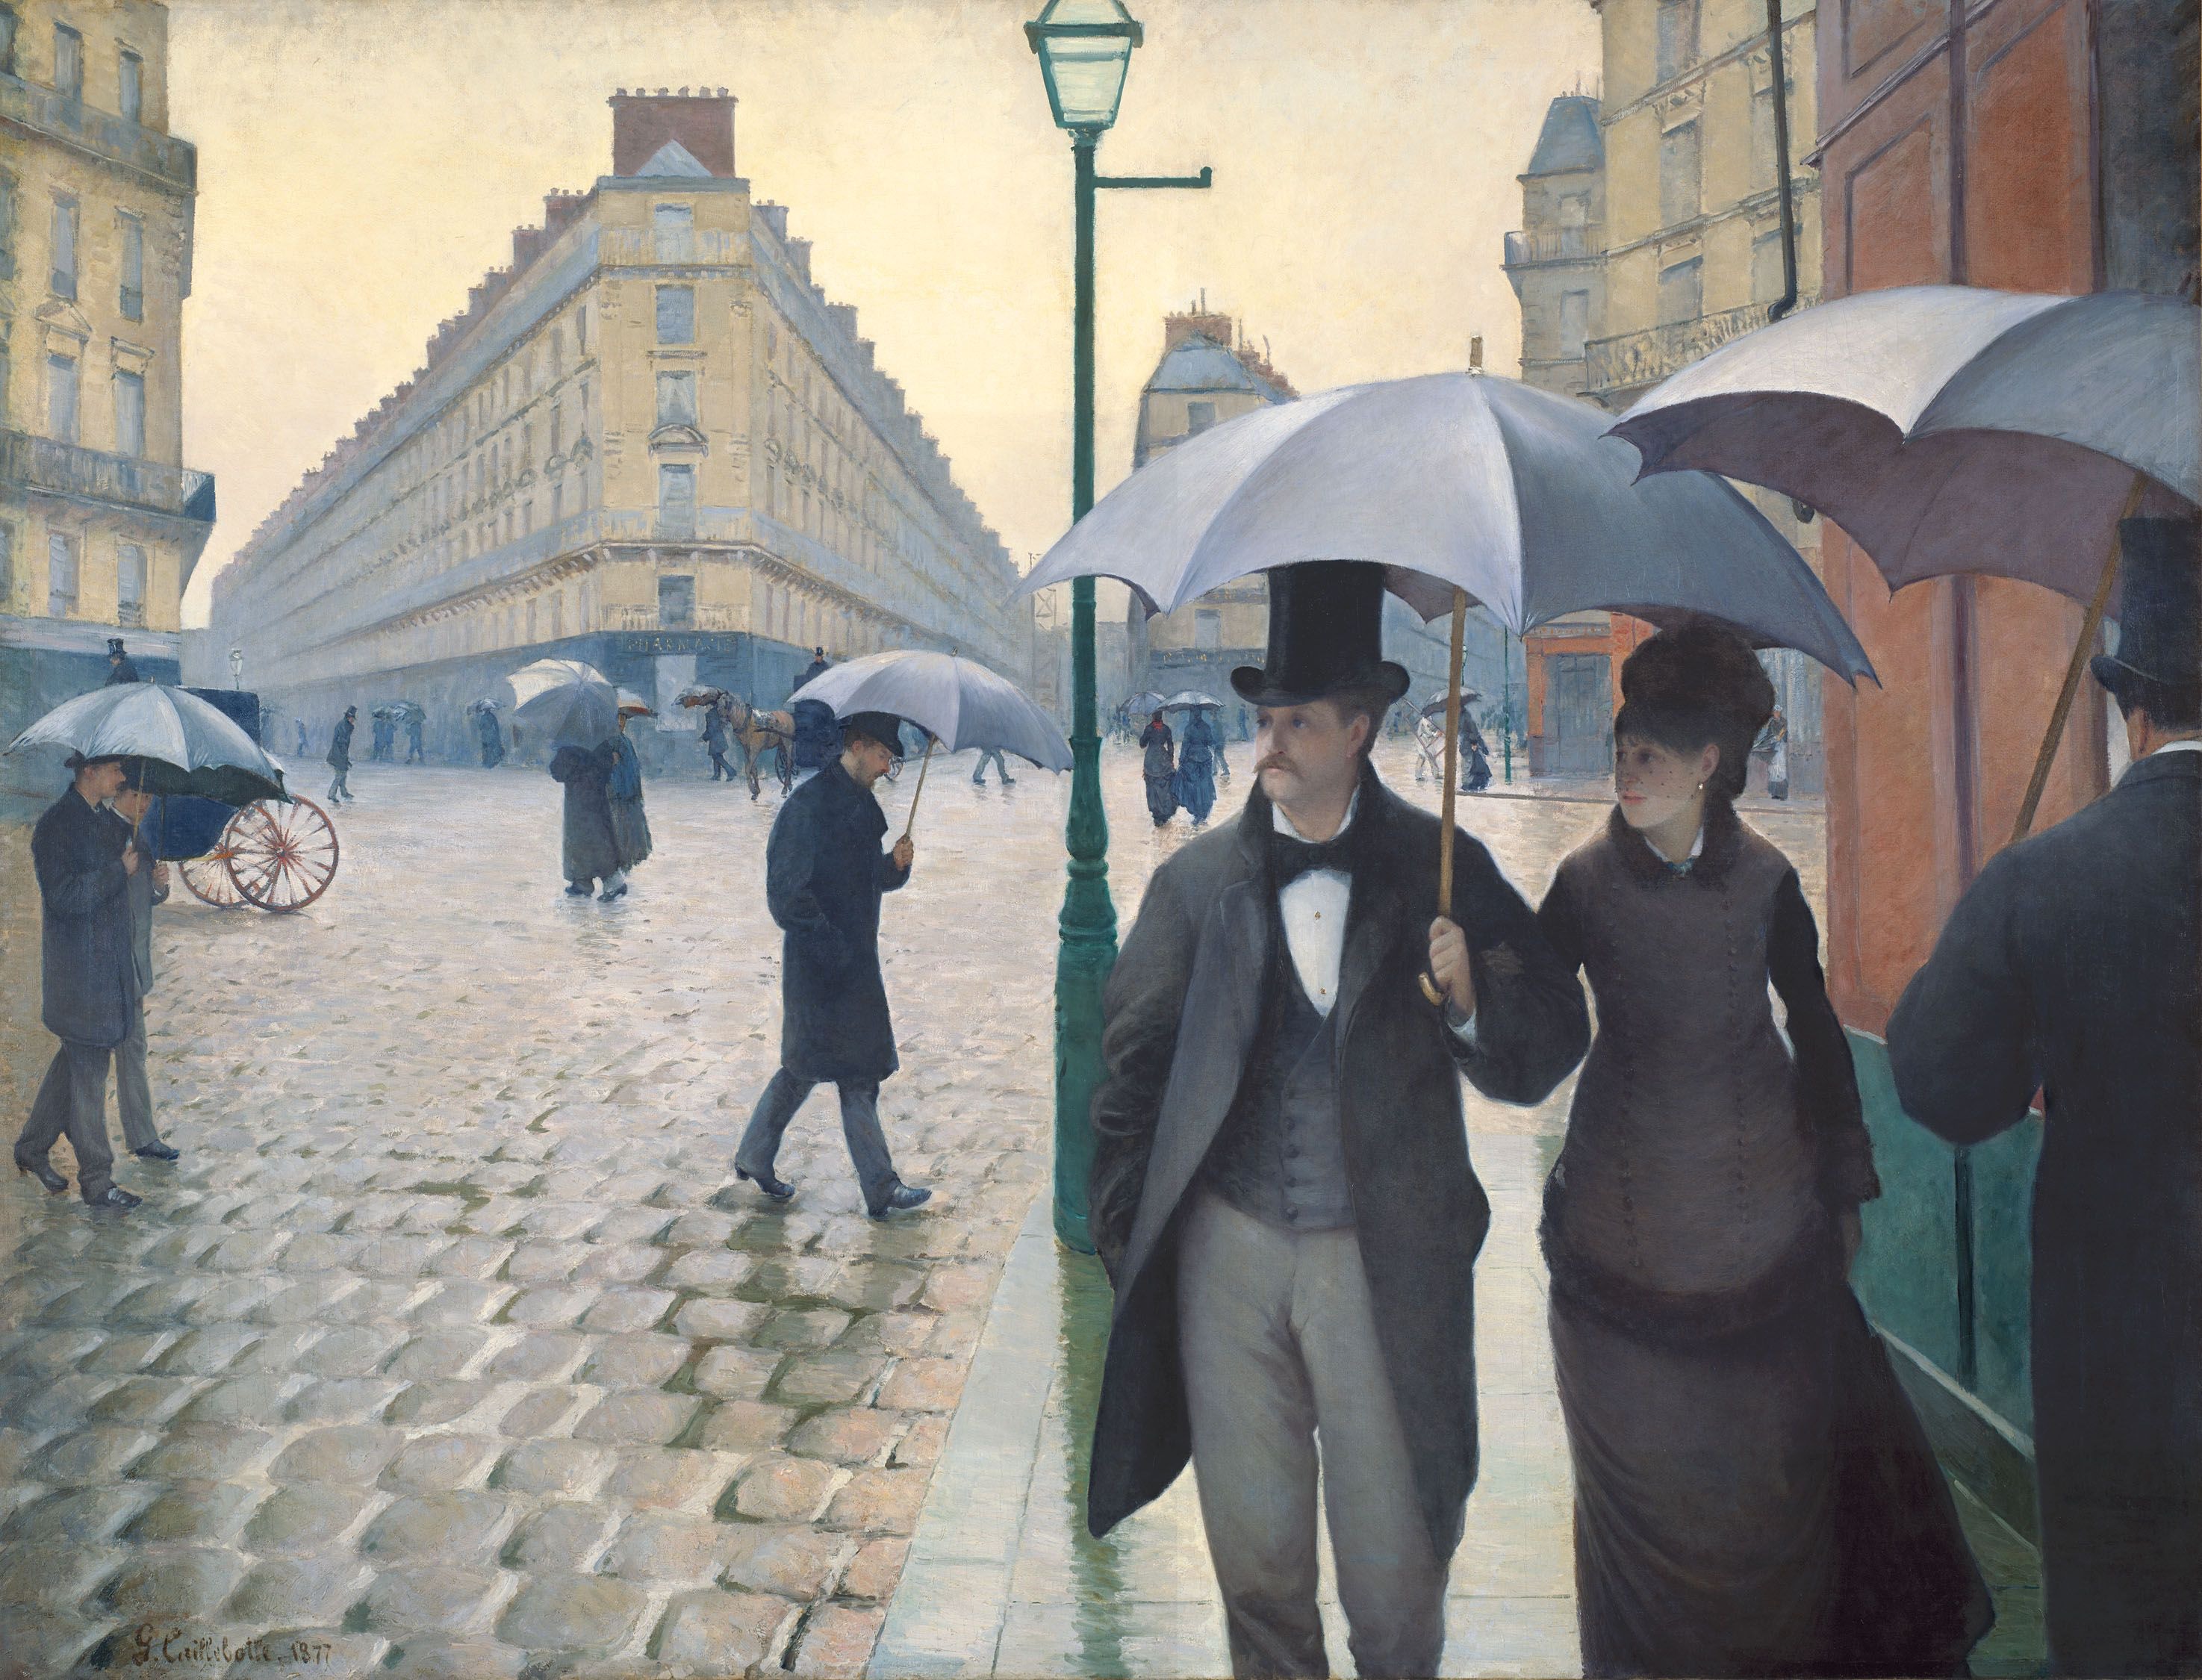 Straße in Paris an einem regnerischen Tag by Gustave Caillebotte - 1877 - 212,1 x 276,2 Art Institute of Chicago